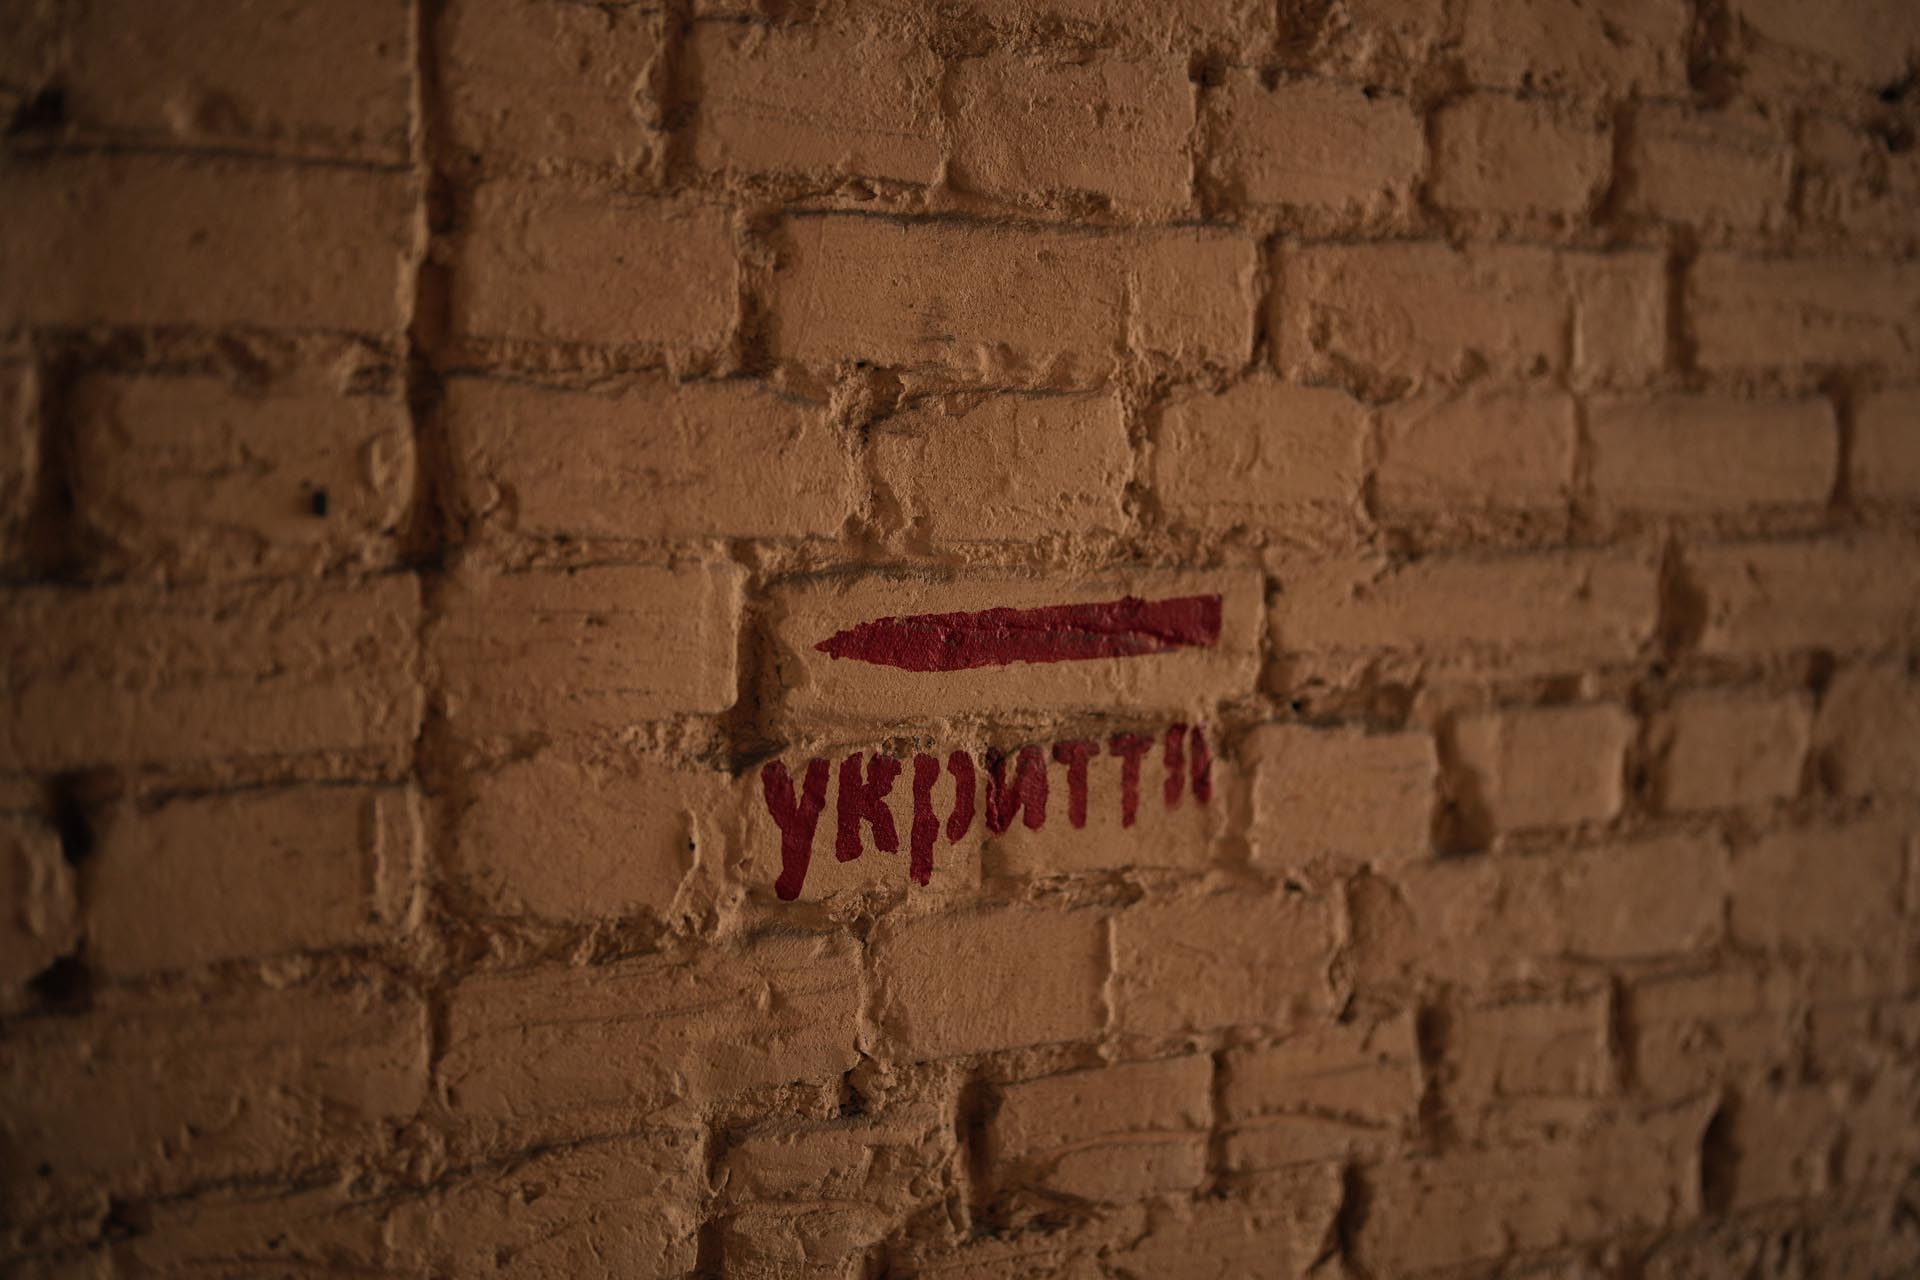 ARCHIVO - Un letrero dice "refugio" en una calle de Kiev, Ucrania, el sábado 11 de marzo de 2023. (Foto AP/Thibault Camus, archivo)

